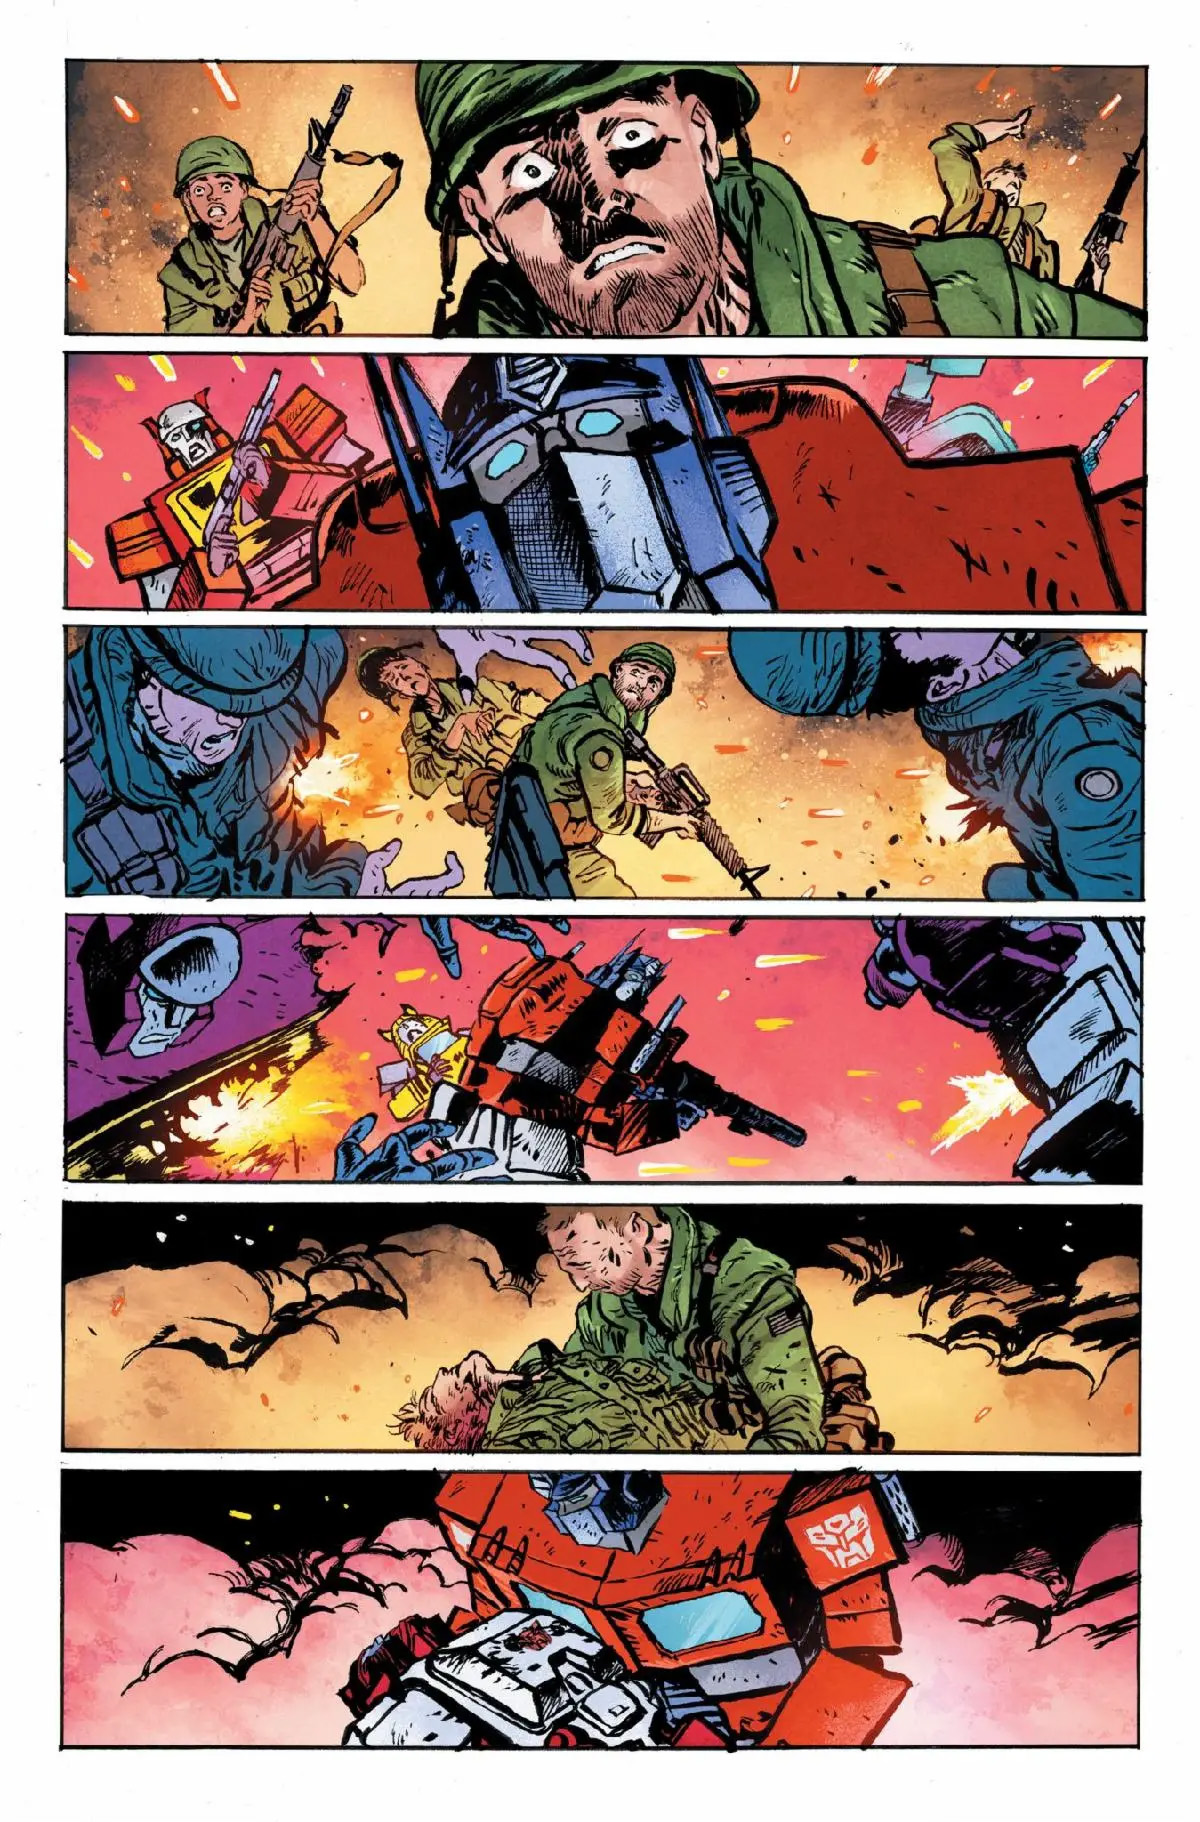 Stránky z Transformers #5